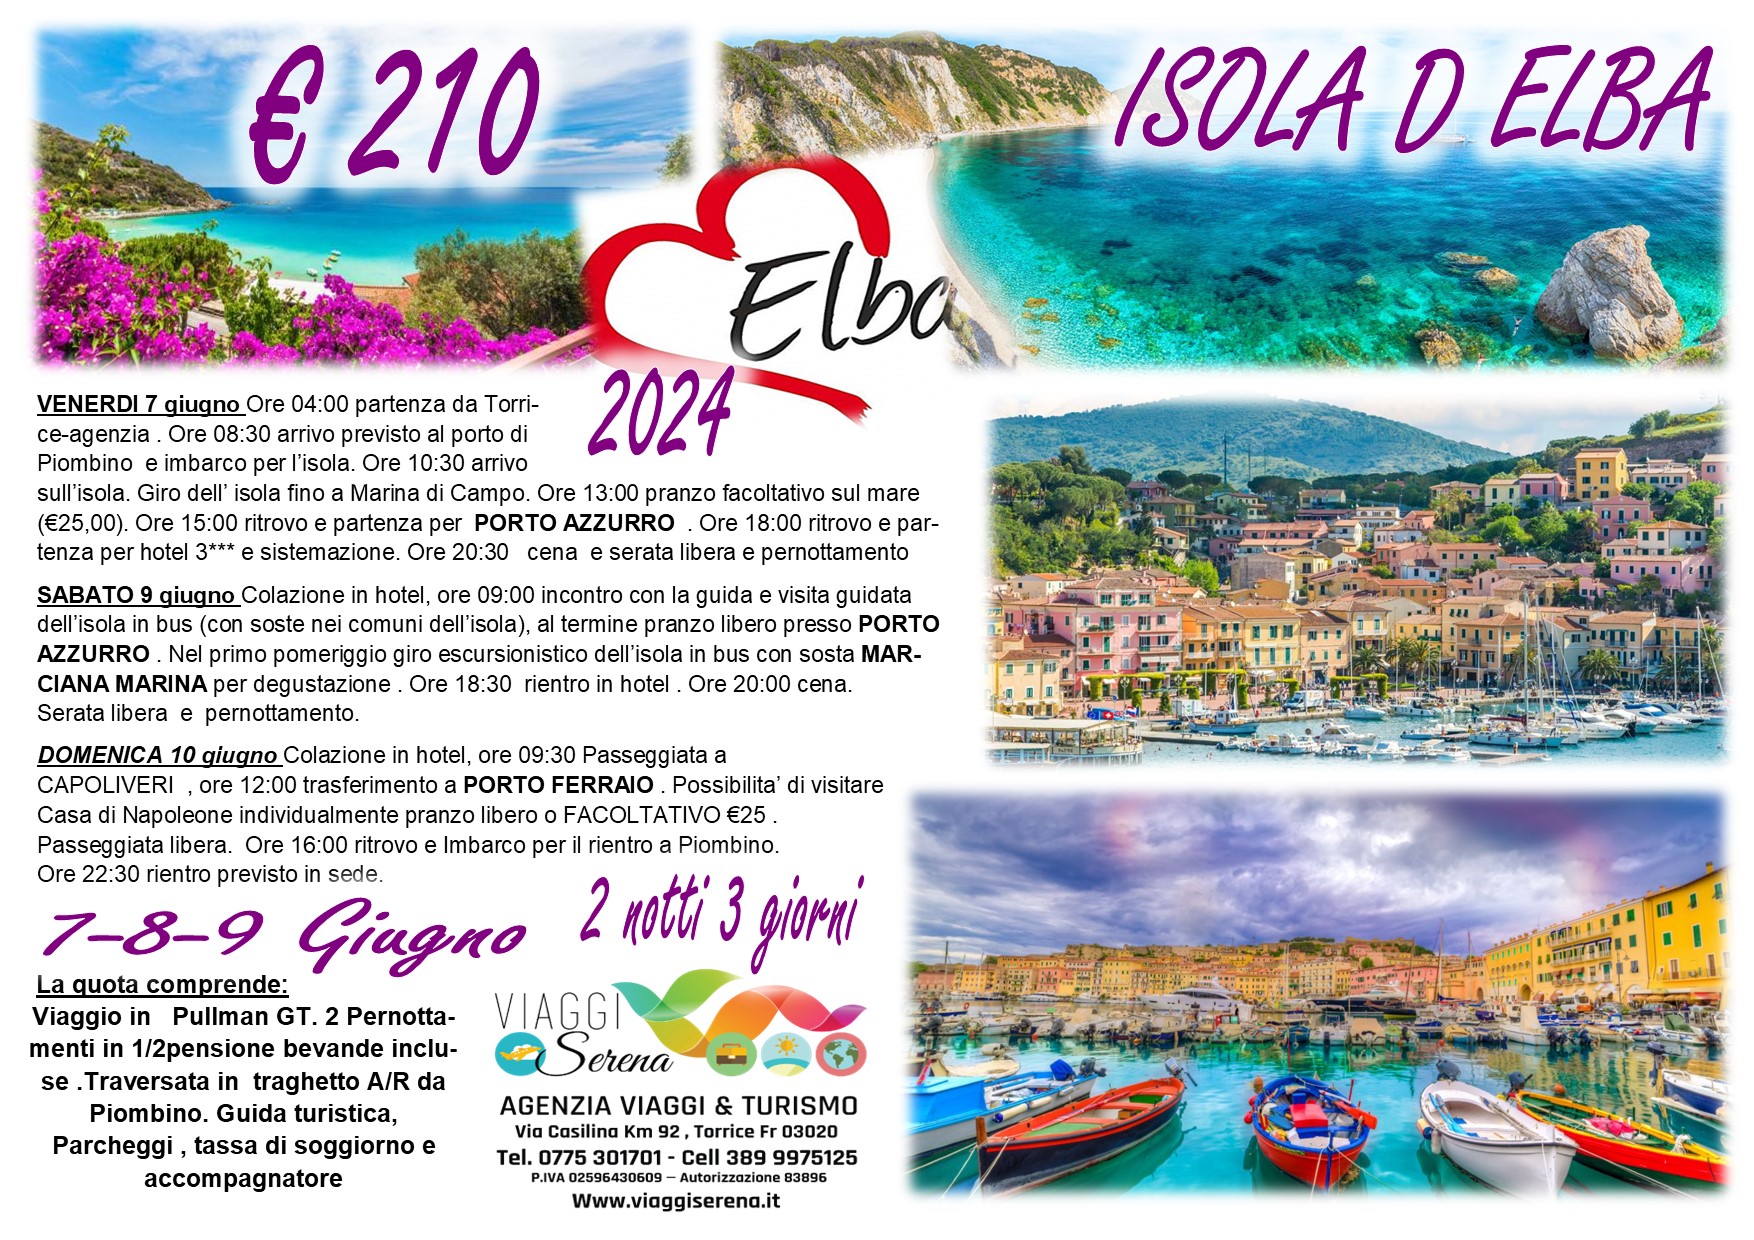 Viaggi di gruppo: Isola d’Elba & i suoi Comuni 7-8-9 Giugno €210,00